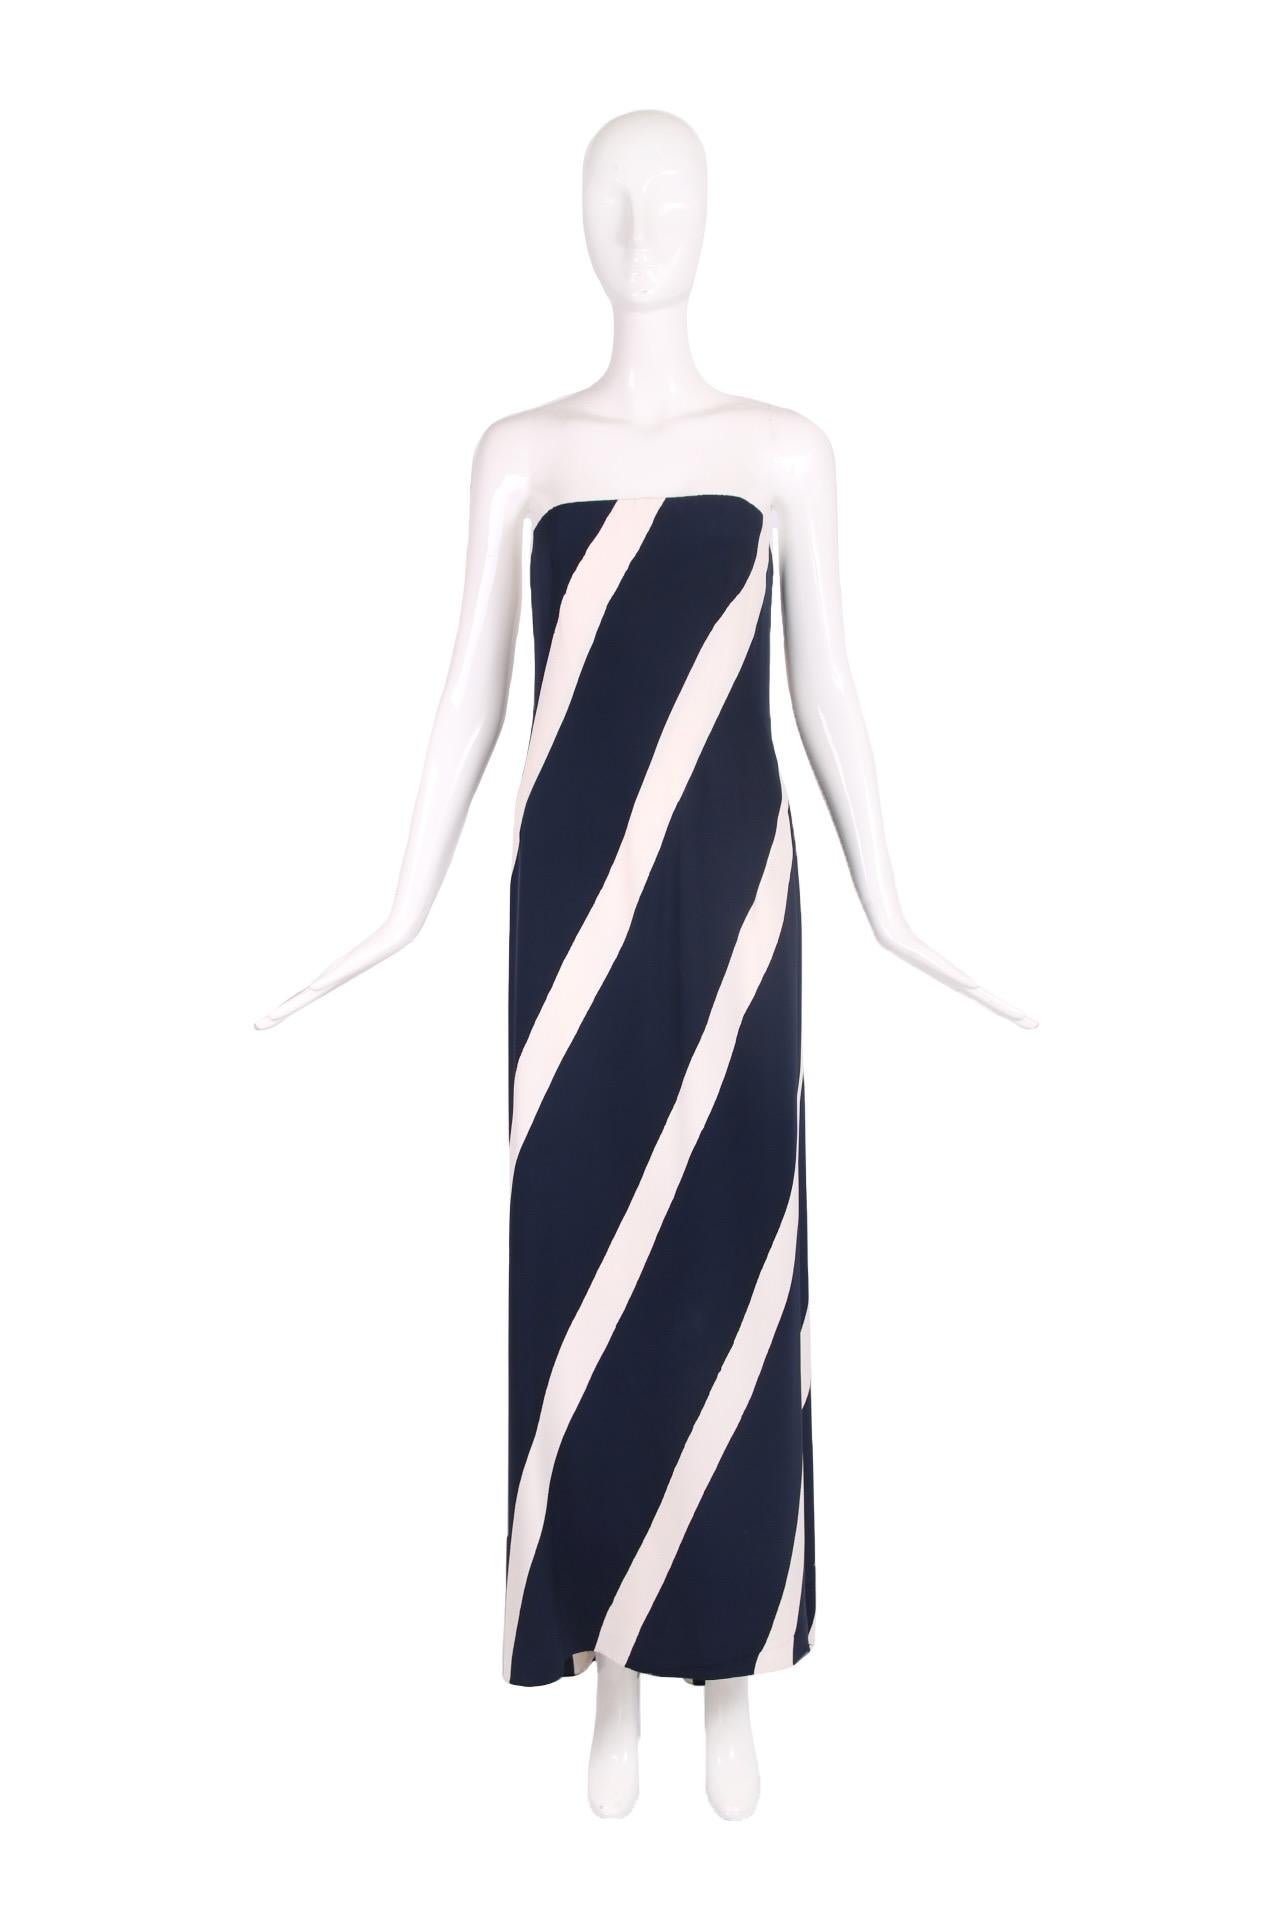 1992 S/S Yves Saint Laurent Haute Couture Nr. 67074 trägerloses Abendkleid aus Seide mit vertikalen/diagonalen marineblauen und weißen Streifen und einer Minischleppe am hinteren Saum. Obwohl es von außen täuschend einfach aussieht, sind das Innere